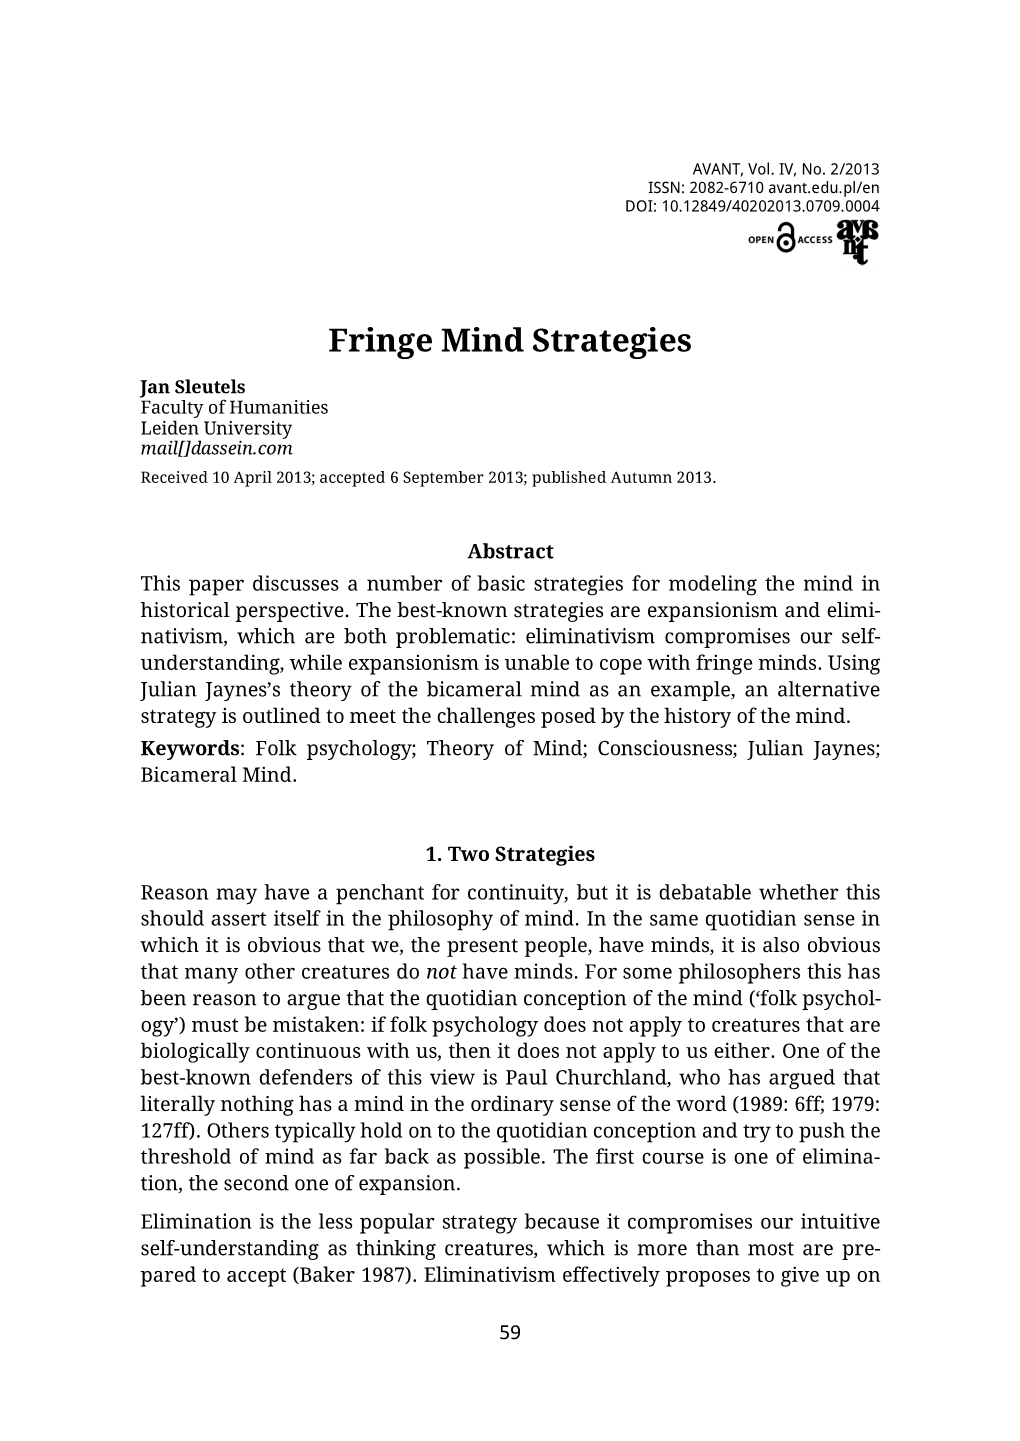 Fringe Mind Strategies